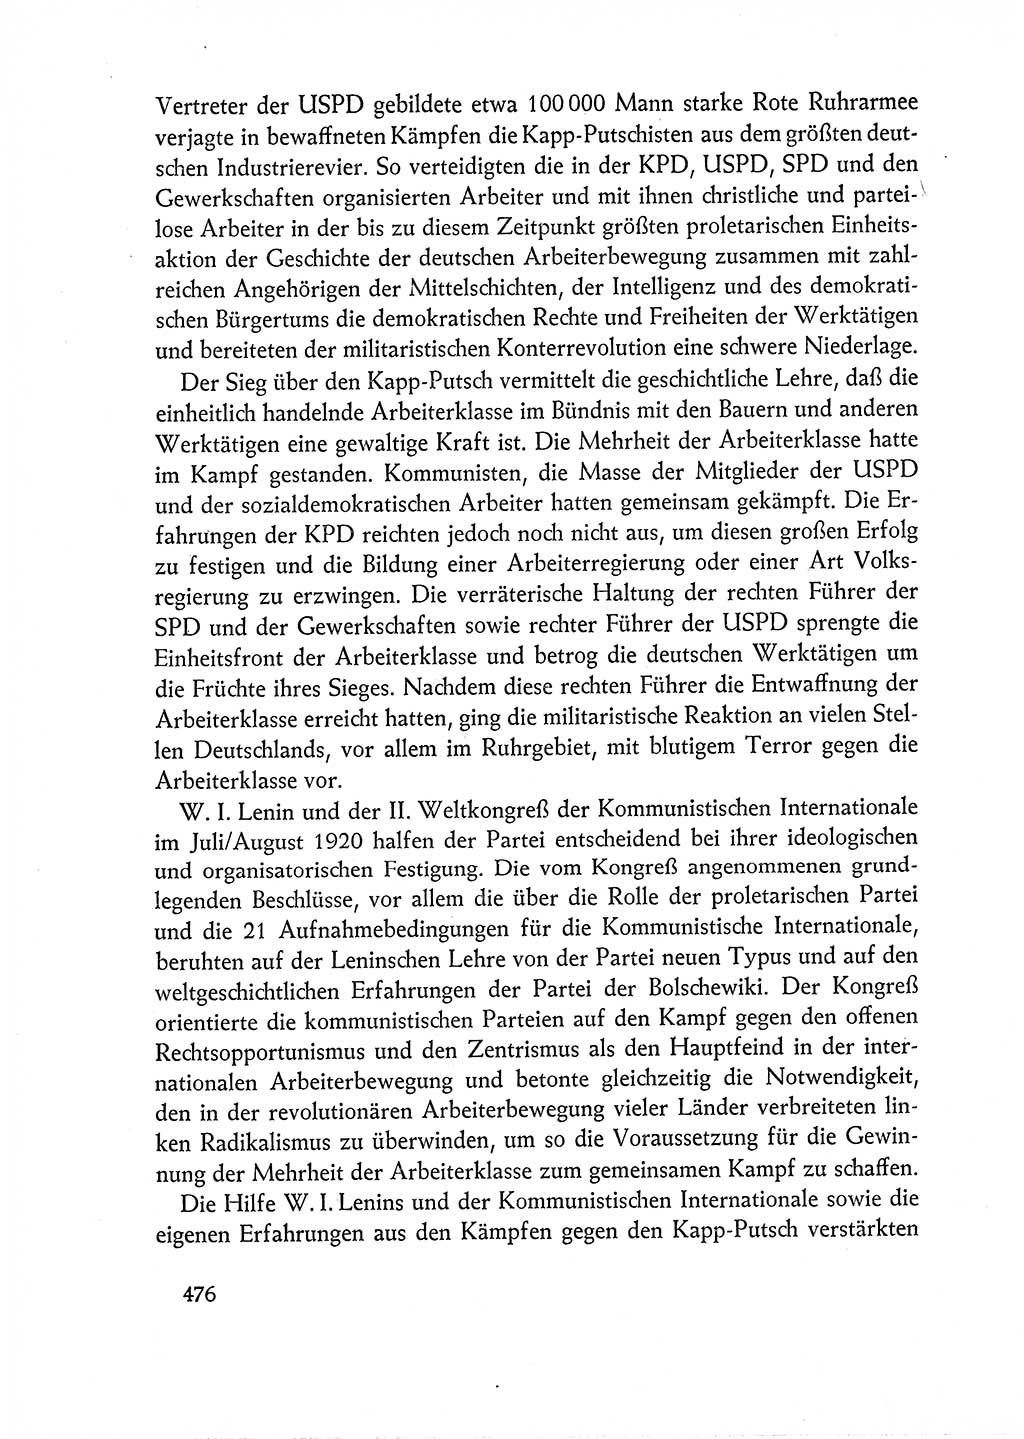 Dokumente der Sozialistischen Einheitspartei Deutschlands (SED) [Deutsche Demokratische Republik (DDR)] 1962-1963, Seite 476 (Dok. SED DDR 1962-1963, S. 476)